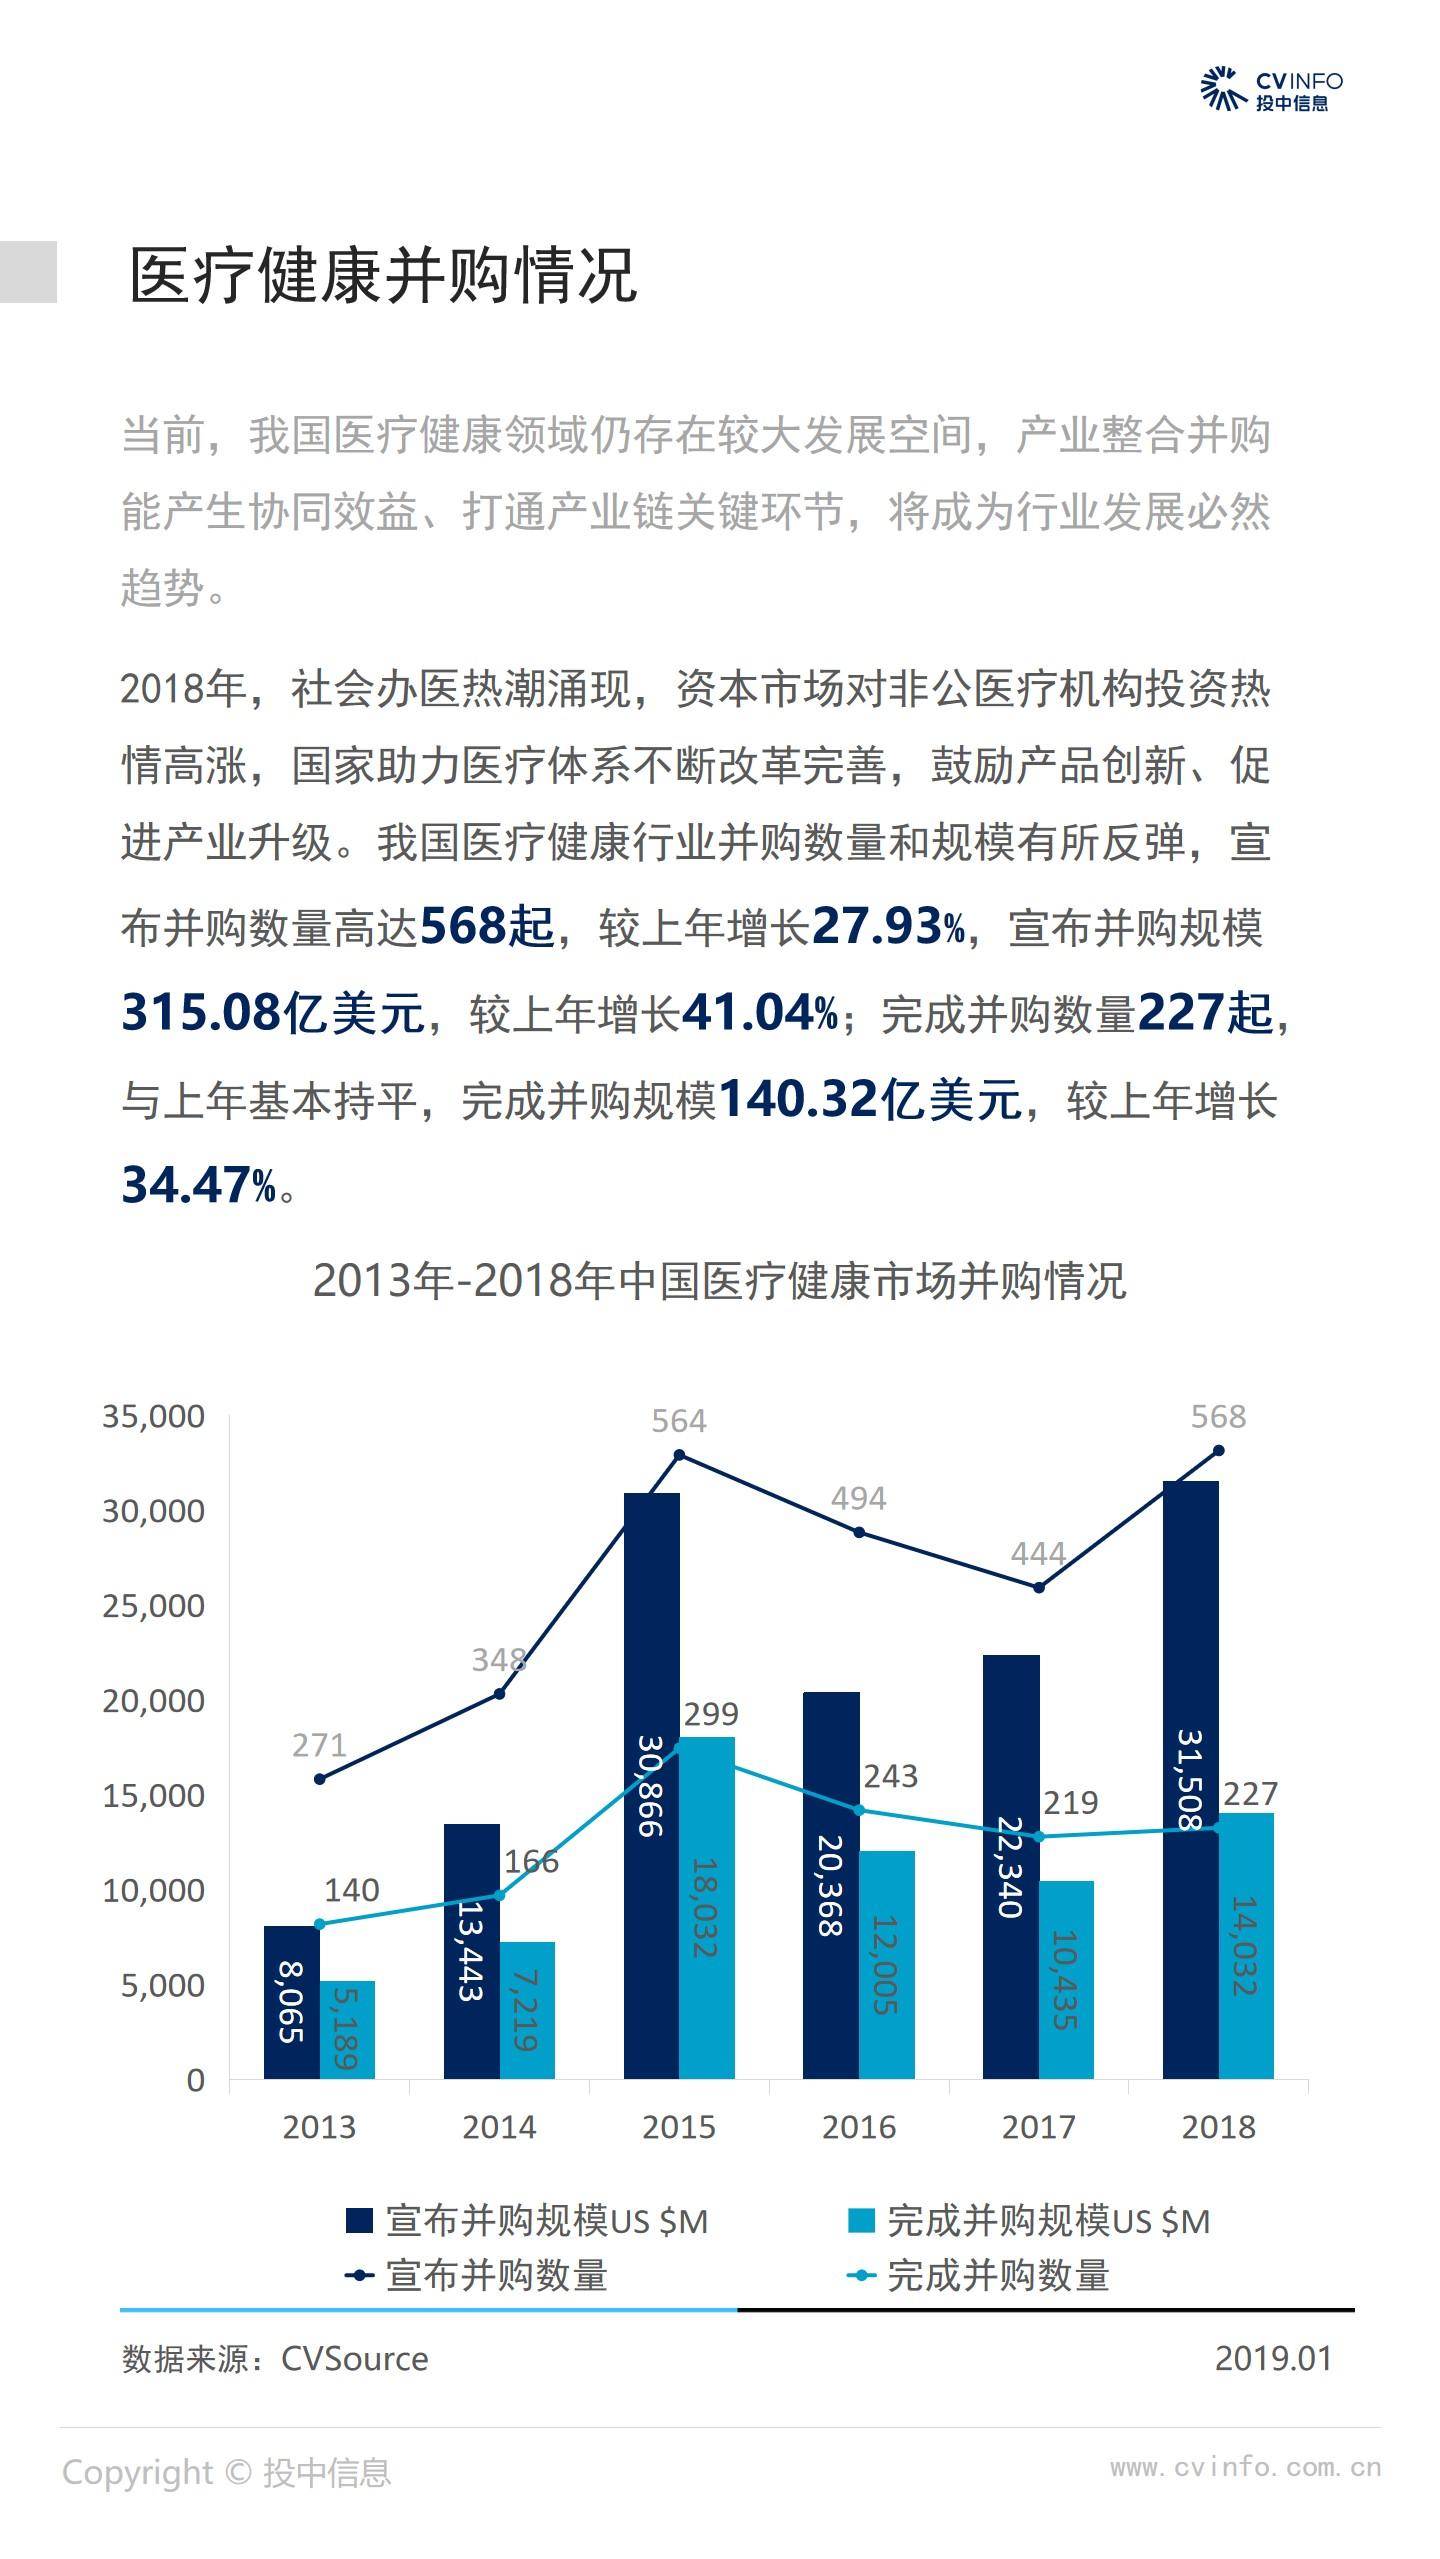 2018年中国医疗健康行业市场数据报告